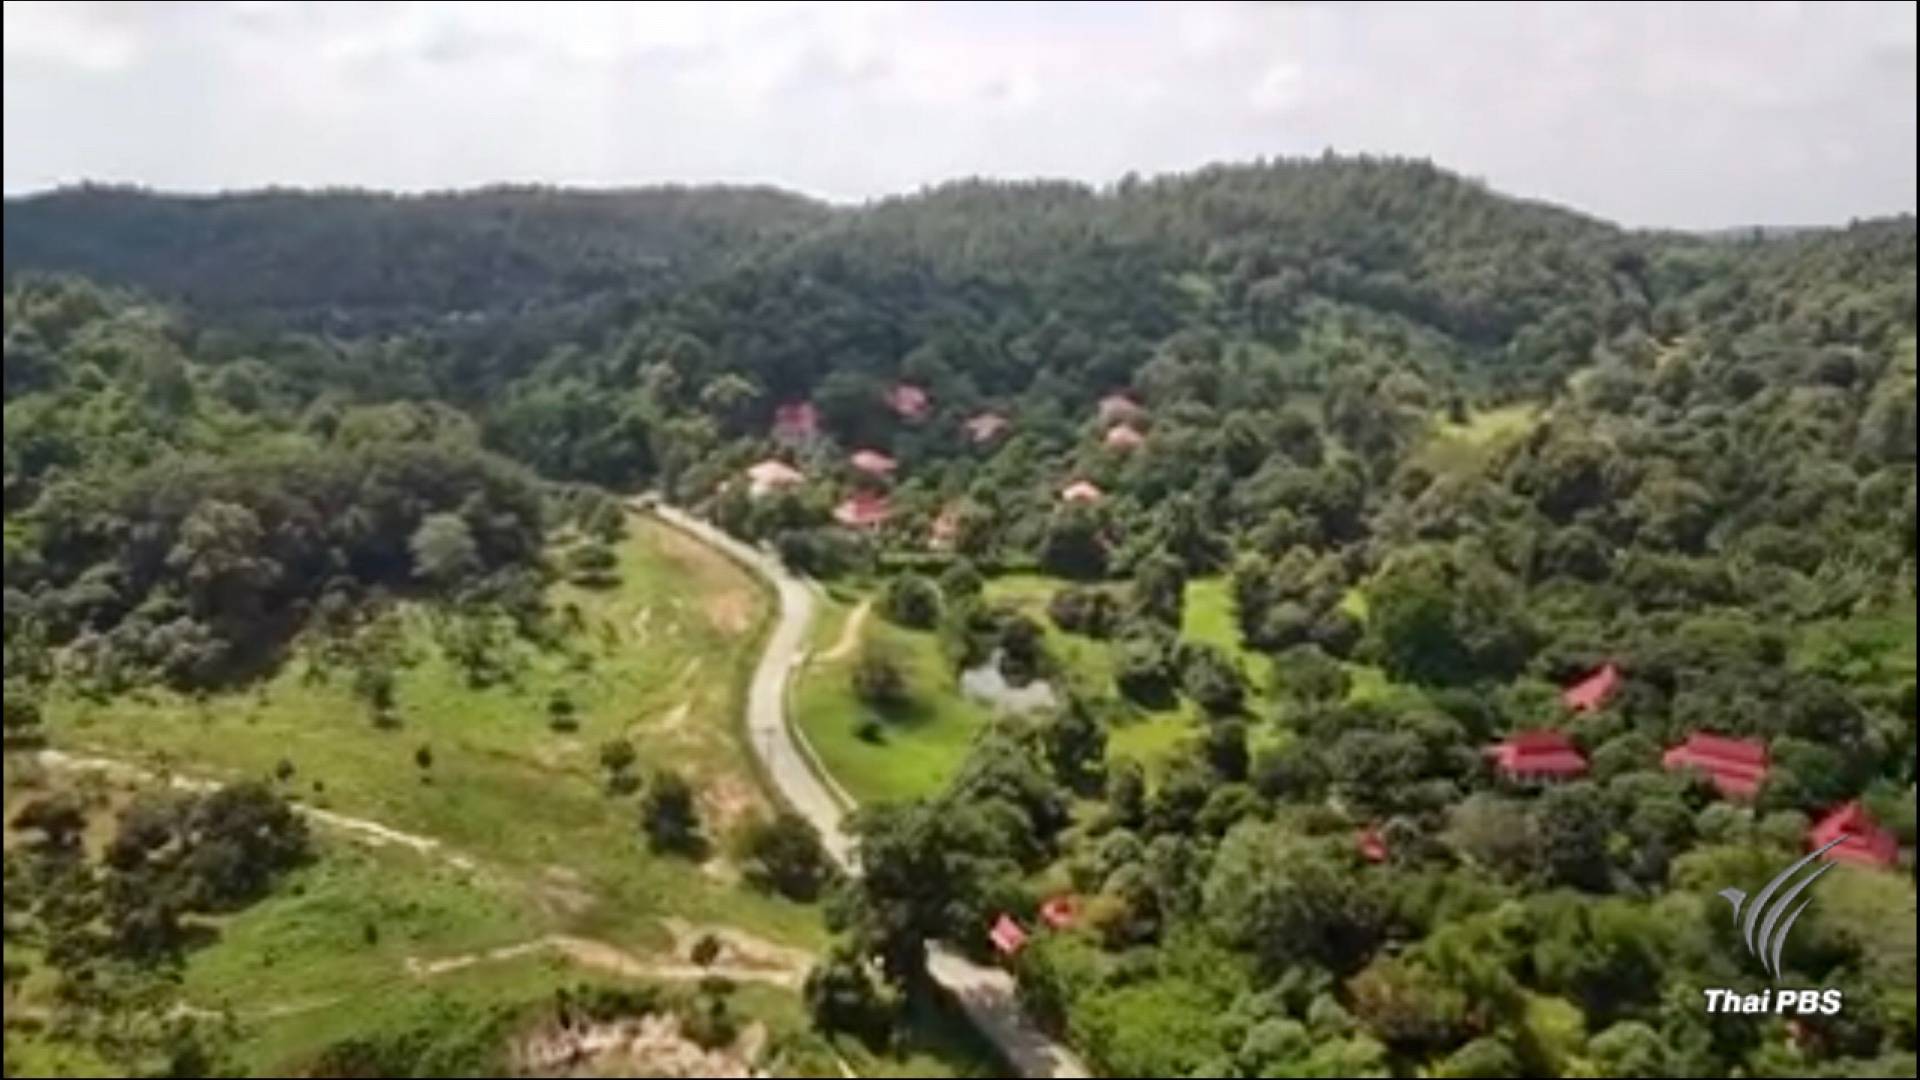 บินสำรวจ ”หุบเขาไฮโซ” เชียงใหม่พบบ้านหรู-รีสอร์ทรุกป่า 18 จุด